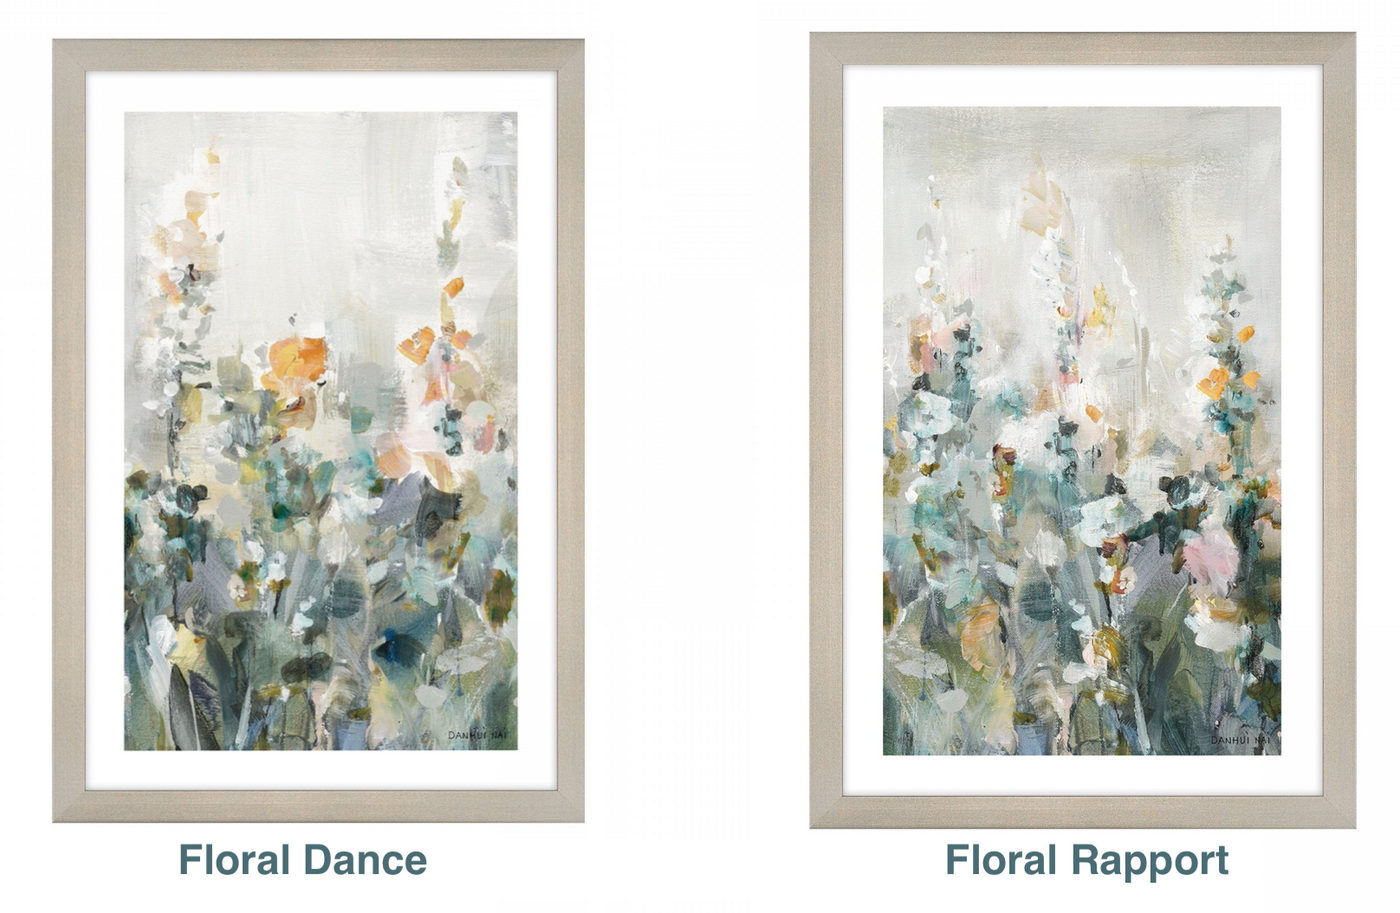 Floral Dance